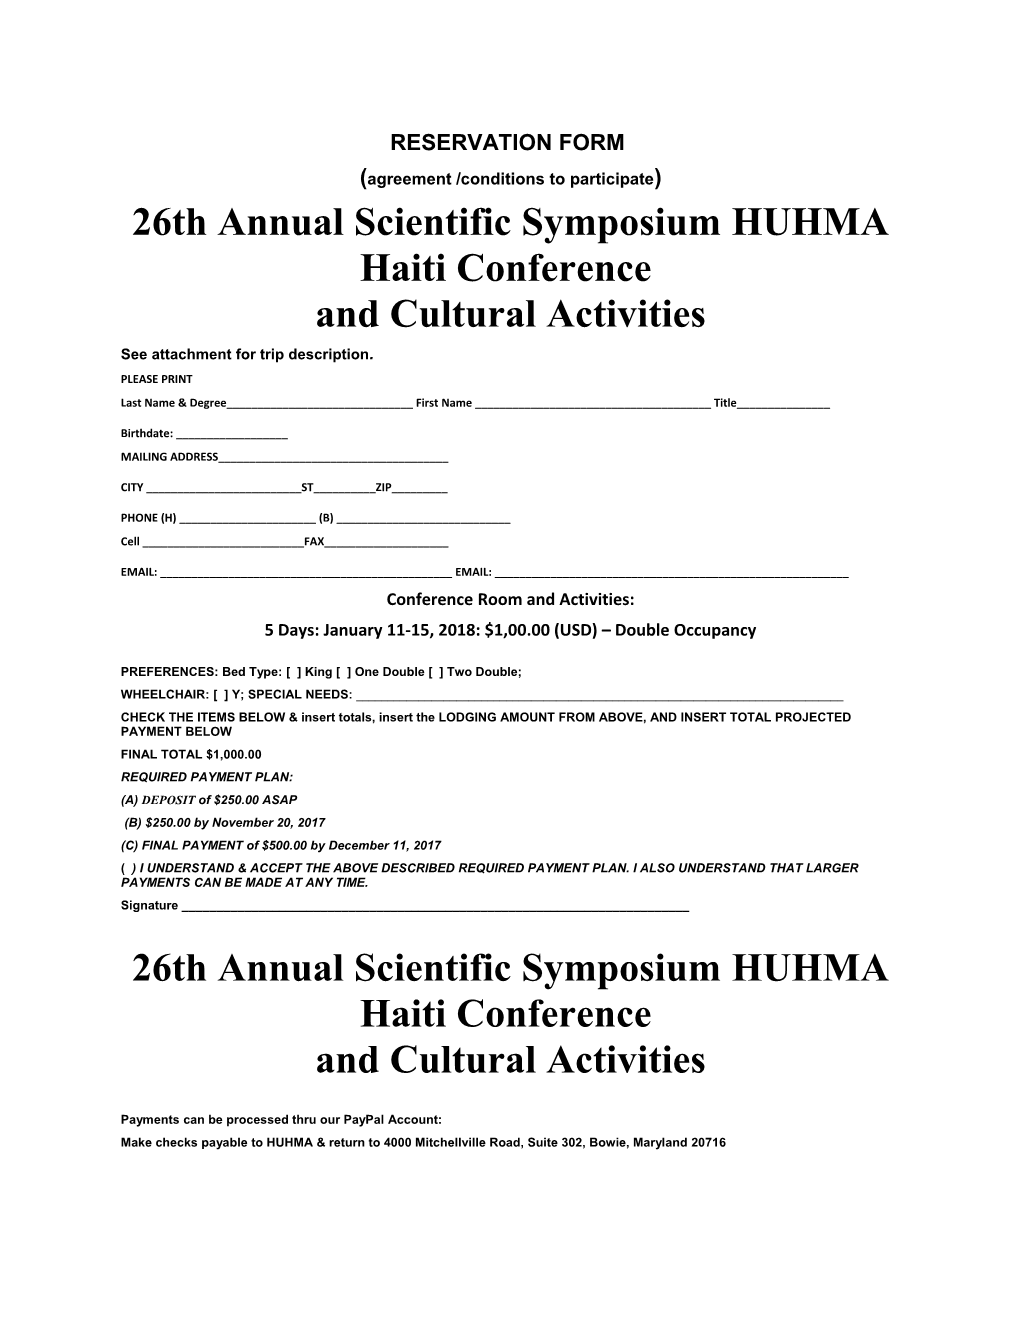 26Th Annual Scientific Symposium HUHMA Haiti Conference